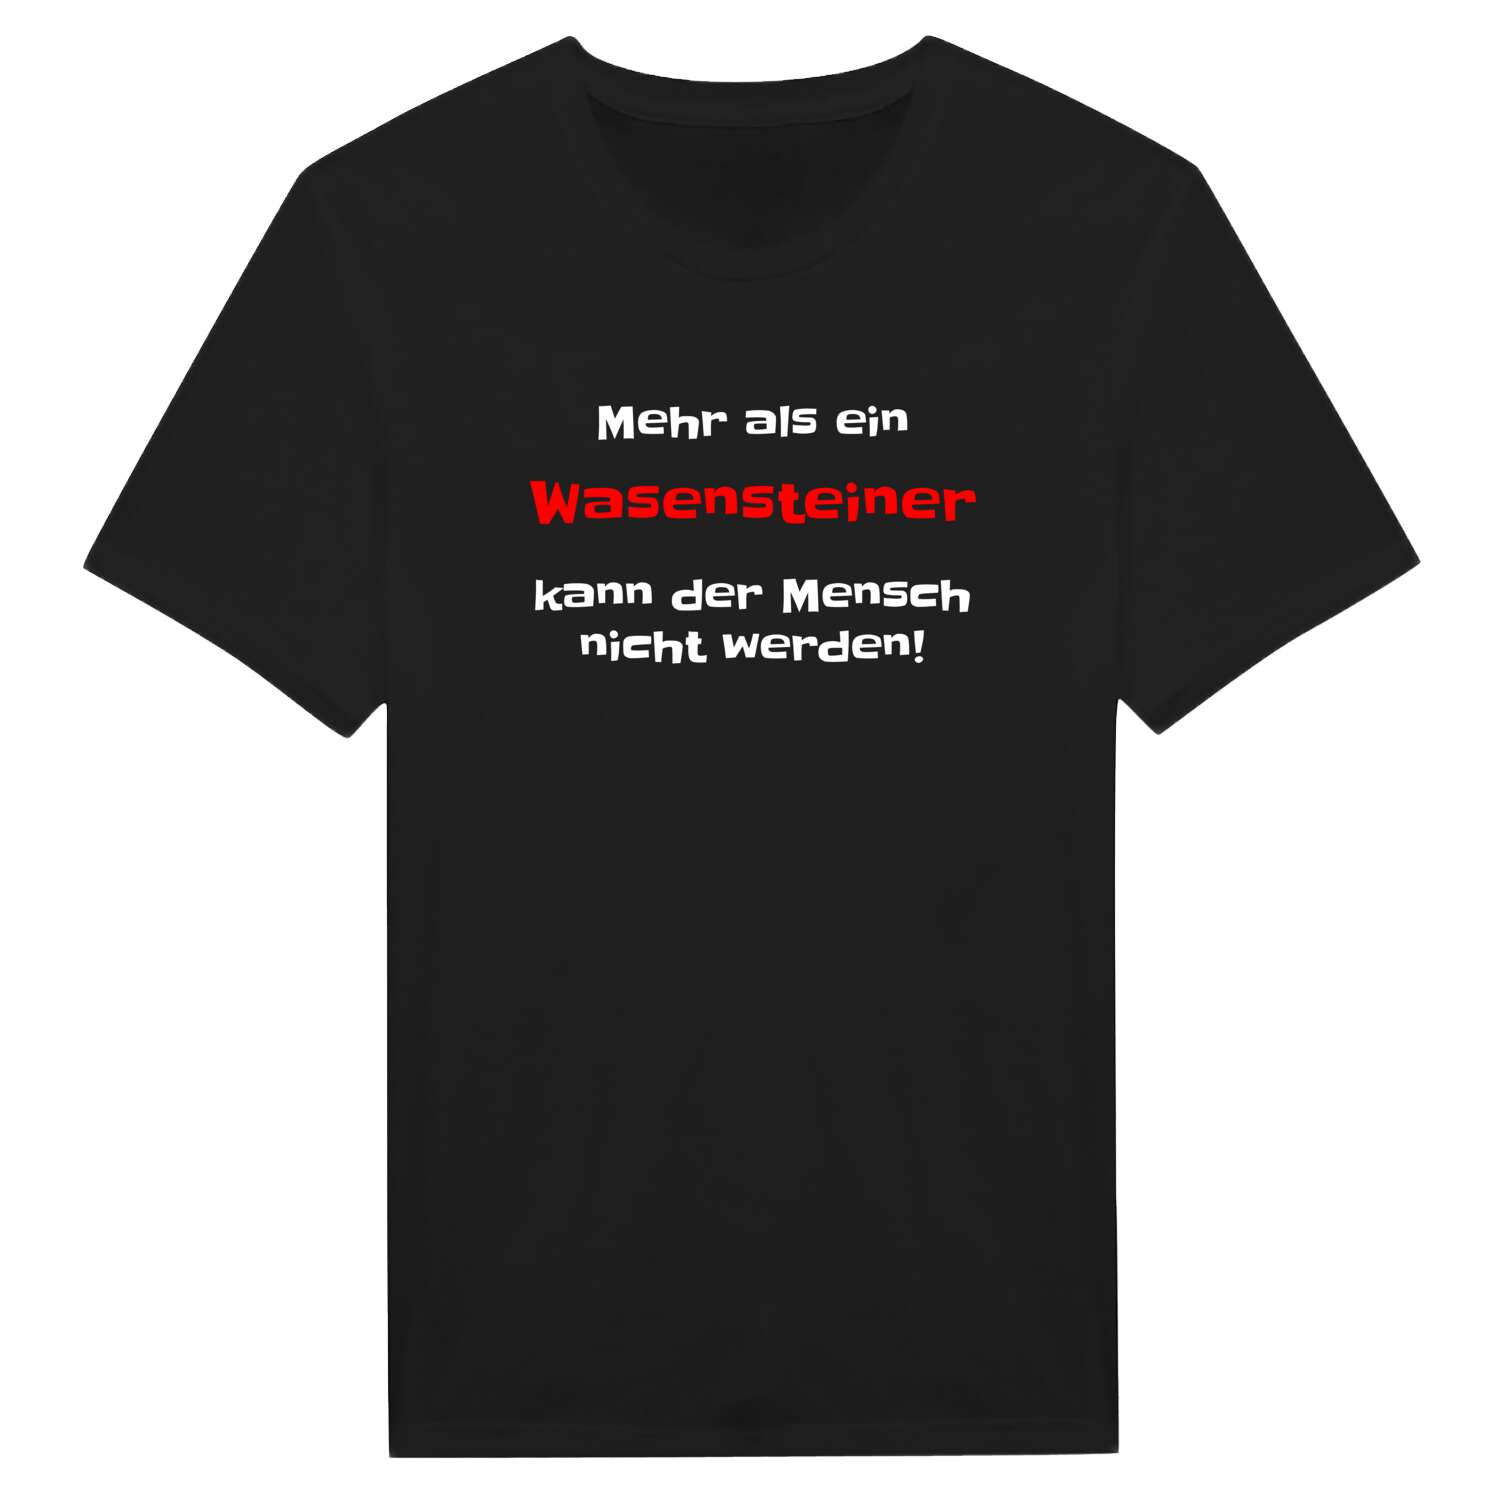 Wasenstein T-Shirt »Mehr als ein«